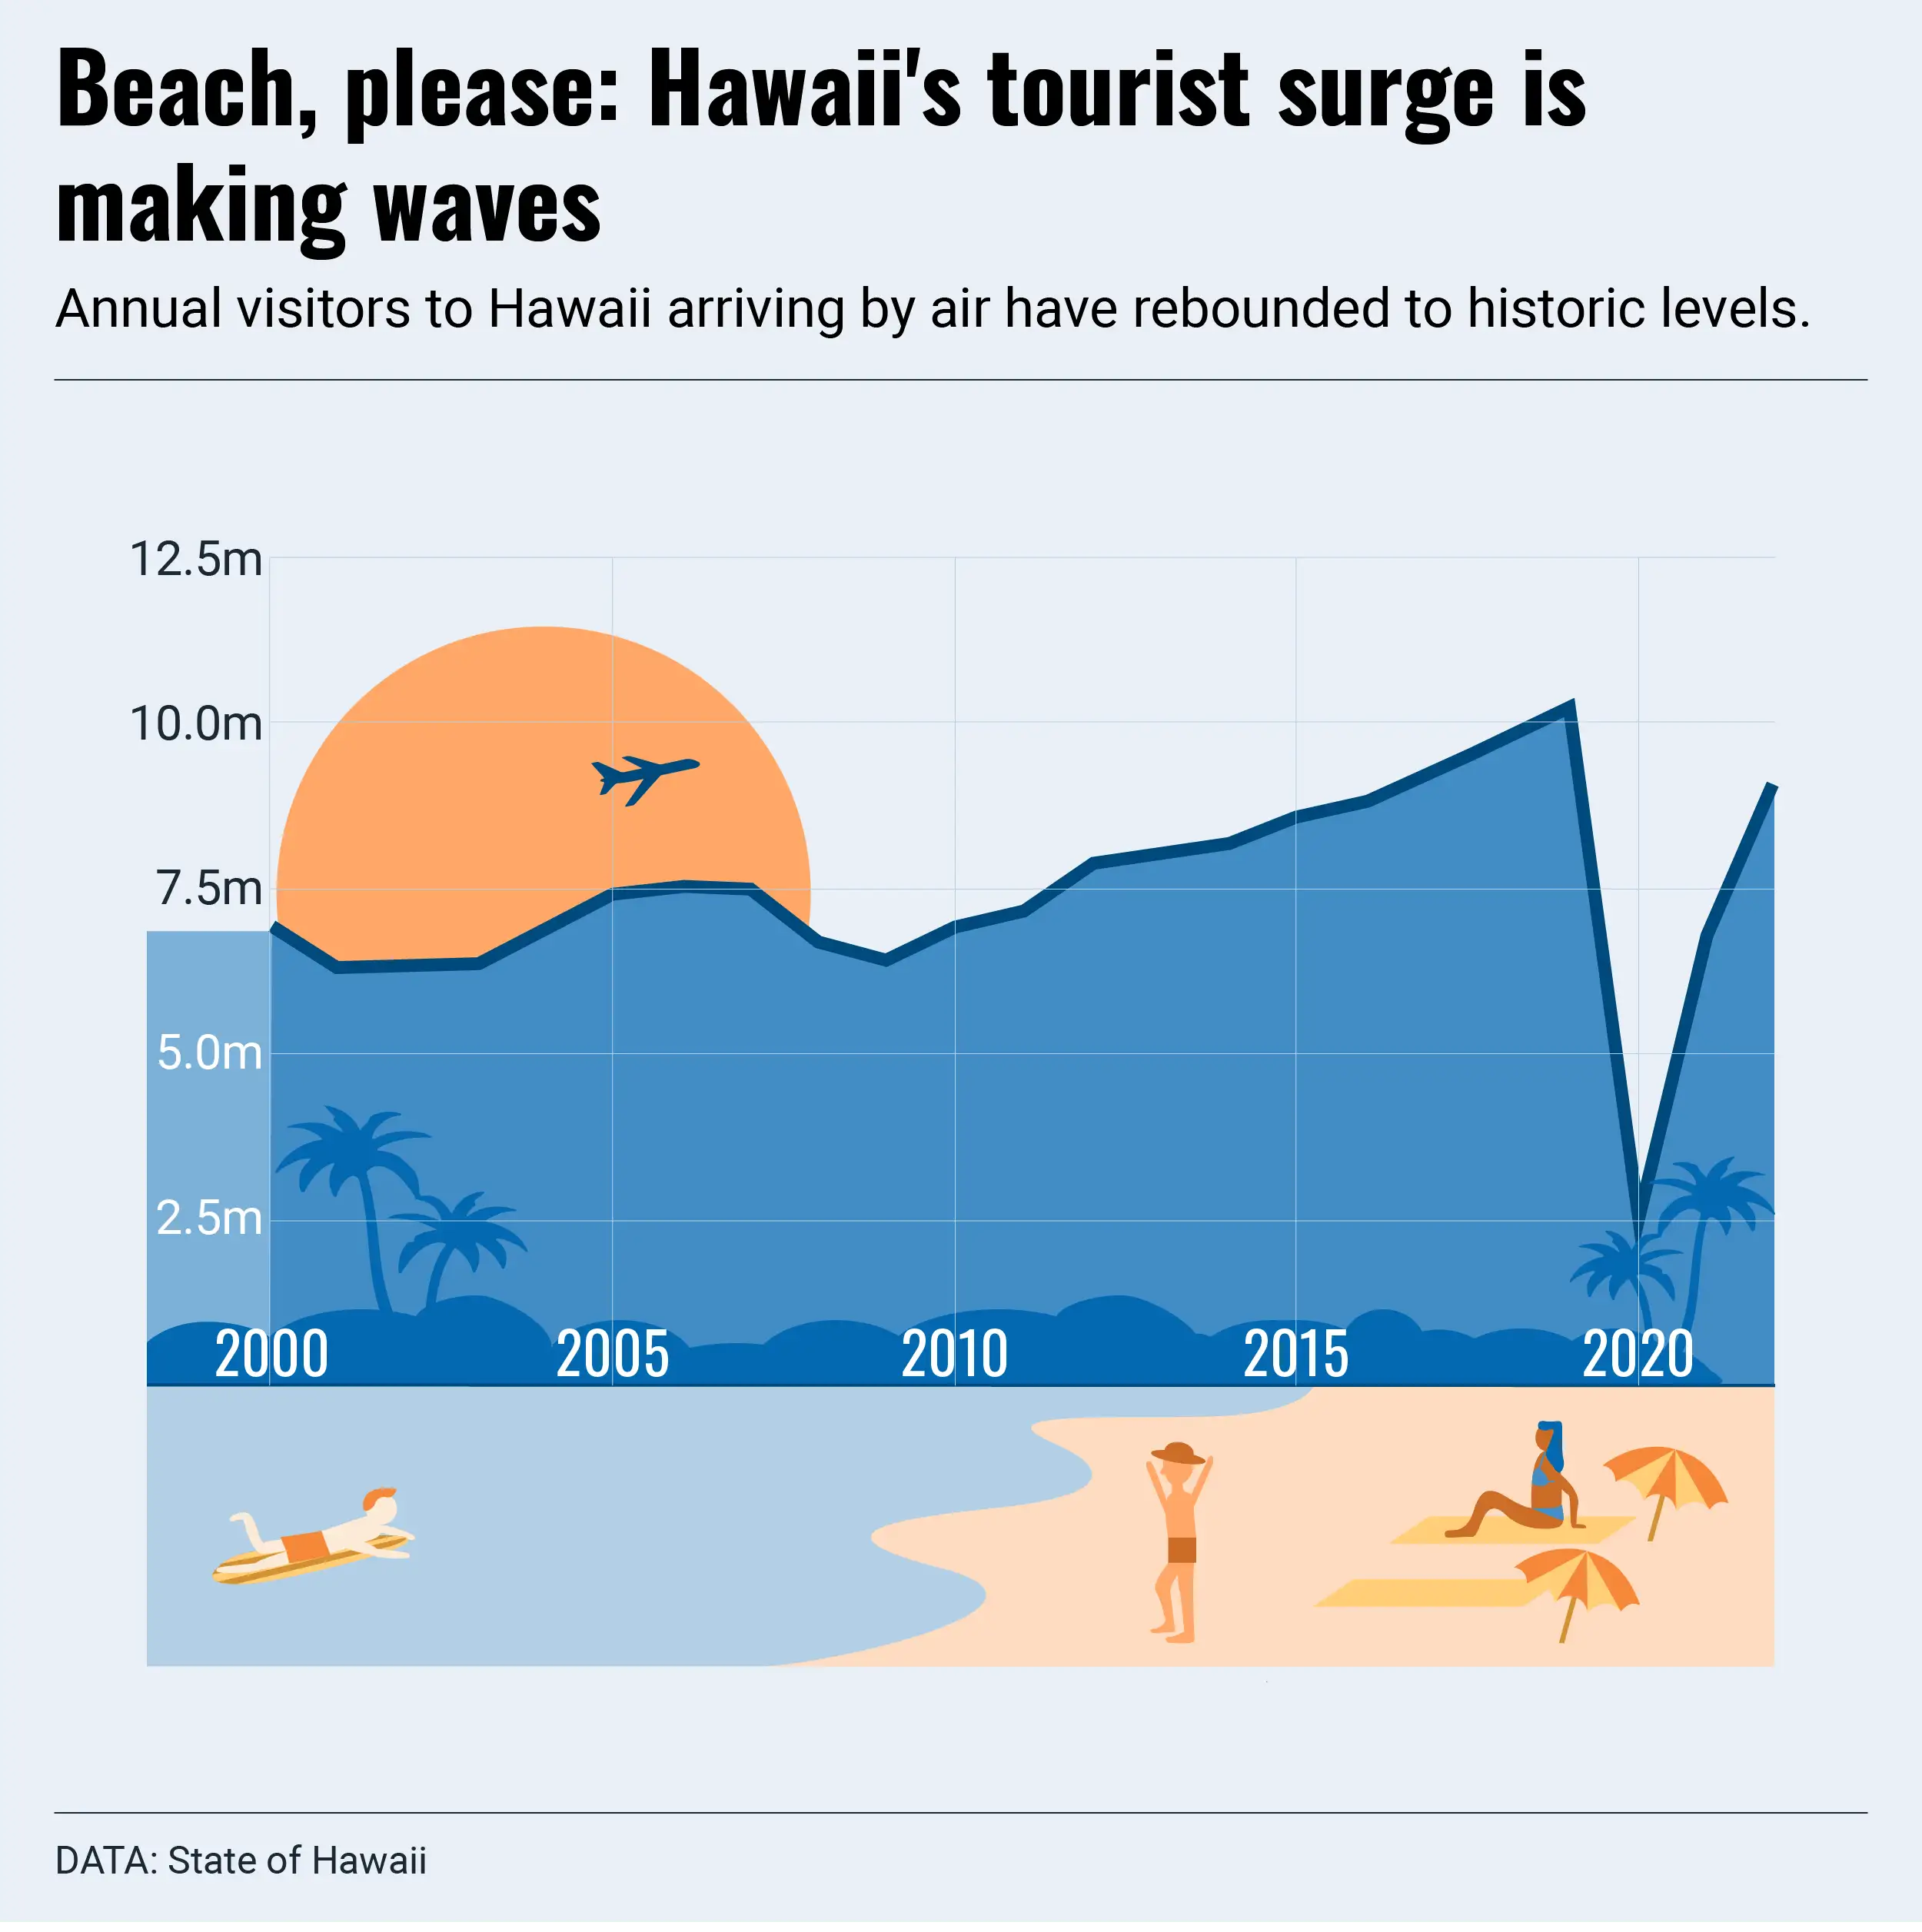 Planning a summer trip? Maybe skip Hawaii, says Hawaii